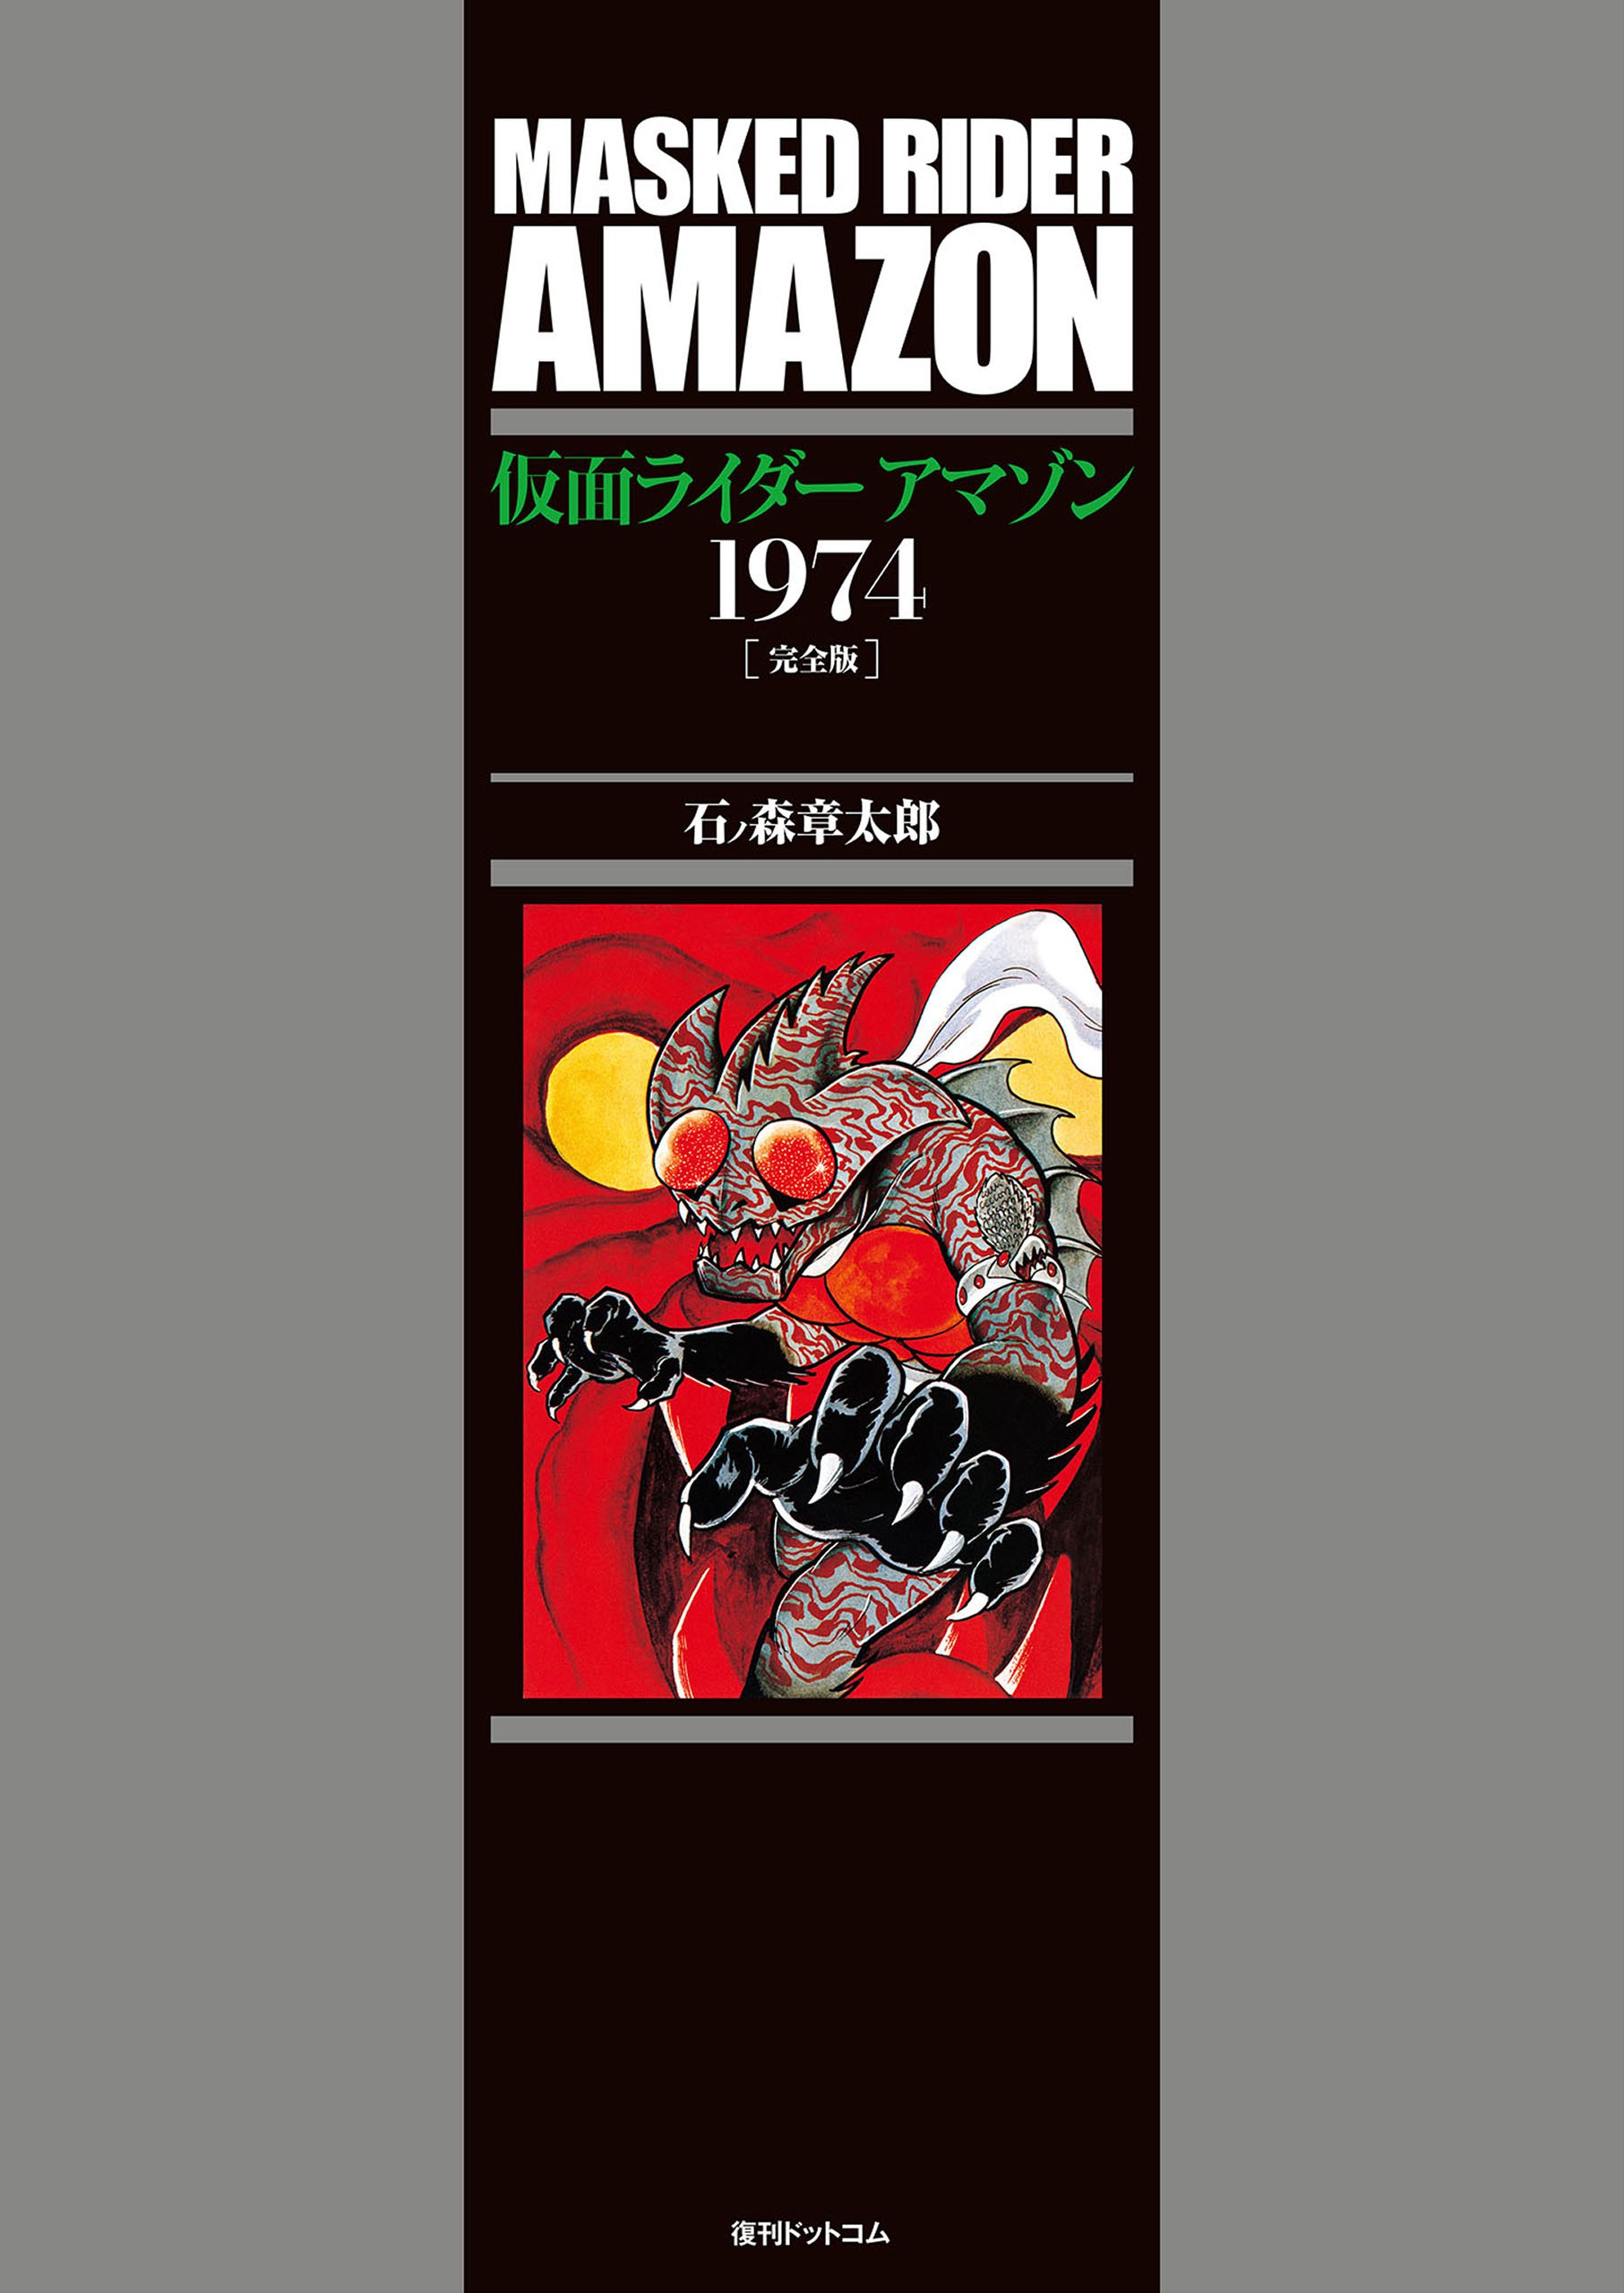 Kamen Rider Amazon cover 1